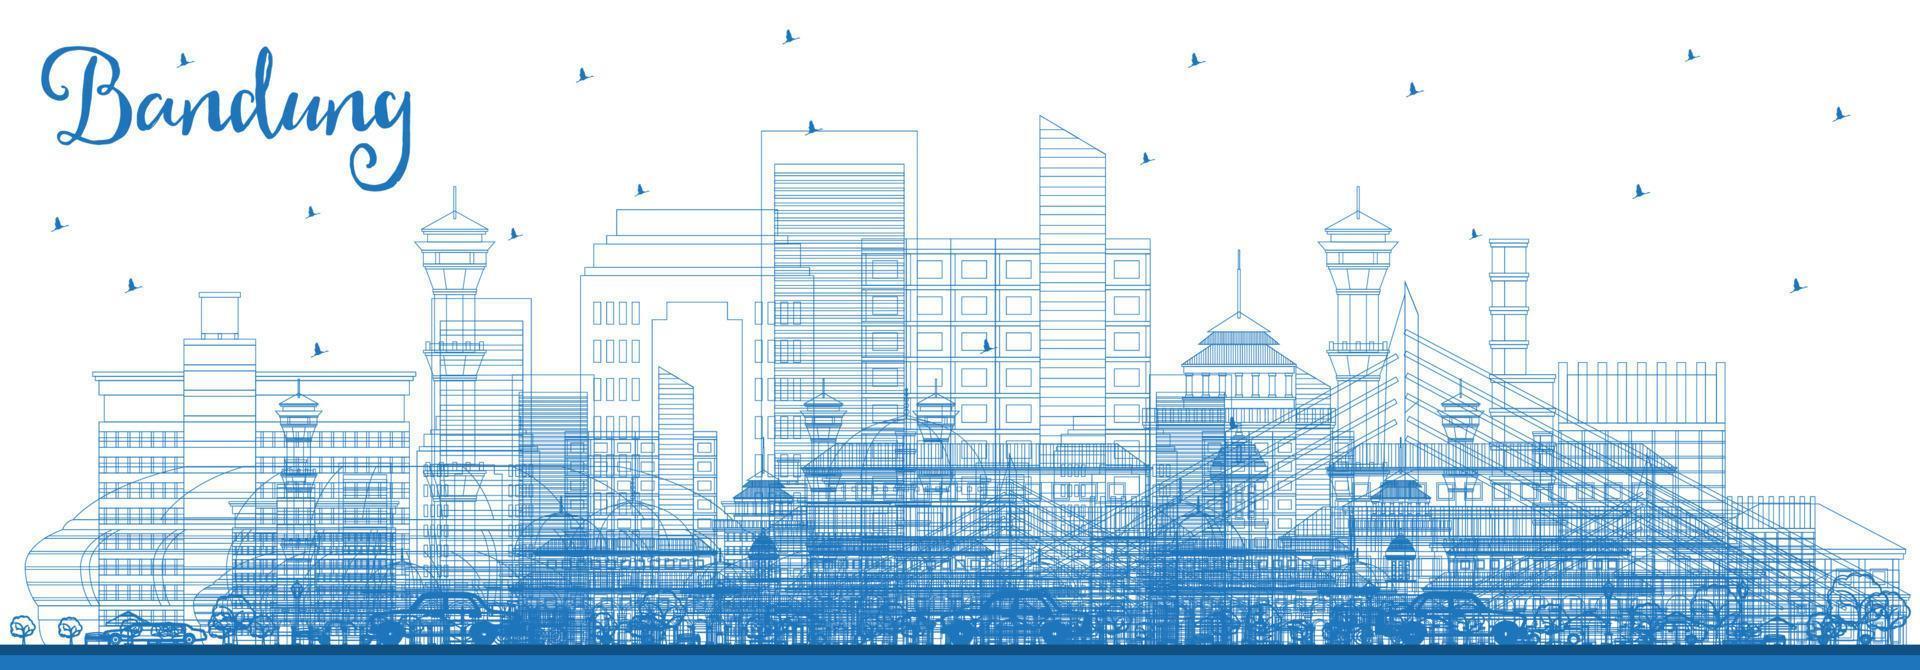 delinear el horizonte de la ciudad de bandung indonesia con edificios azules. vector